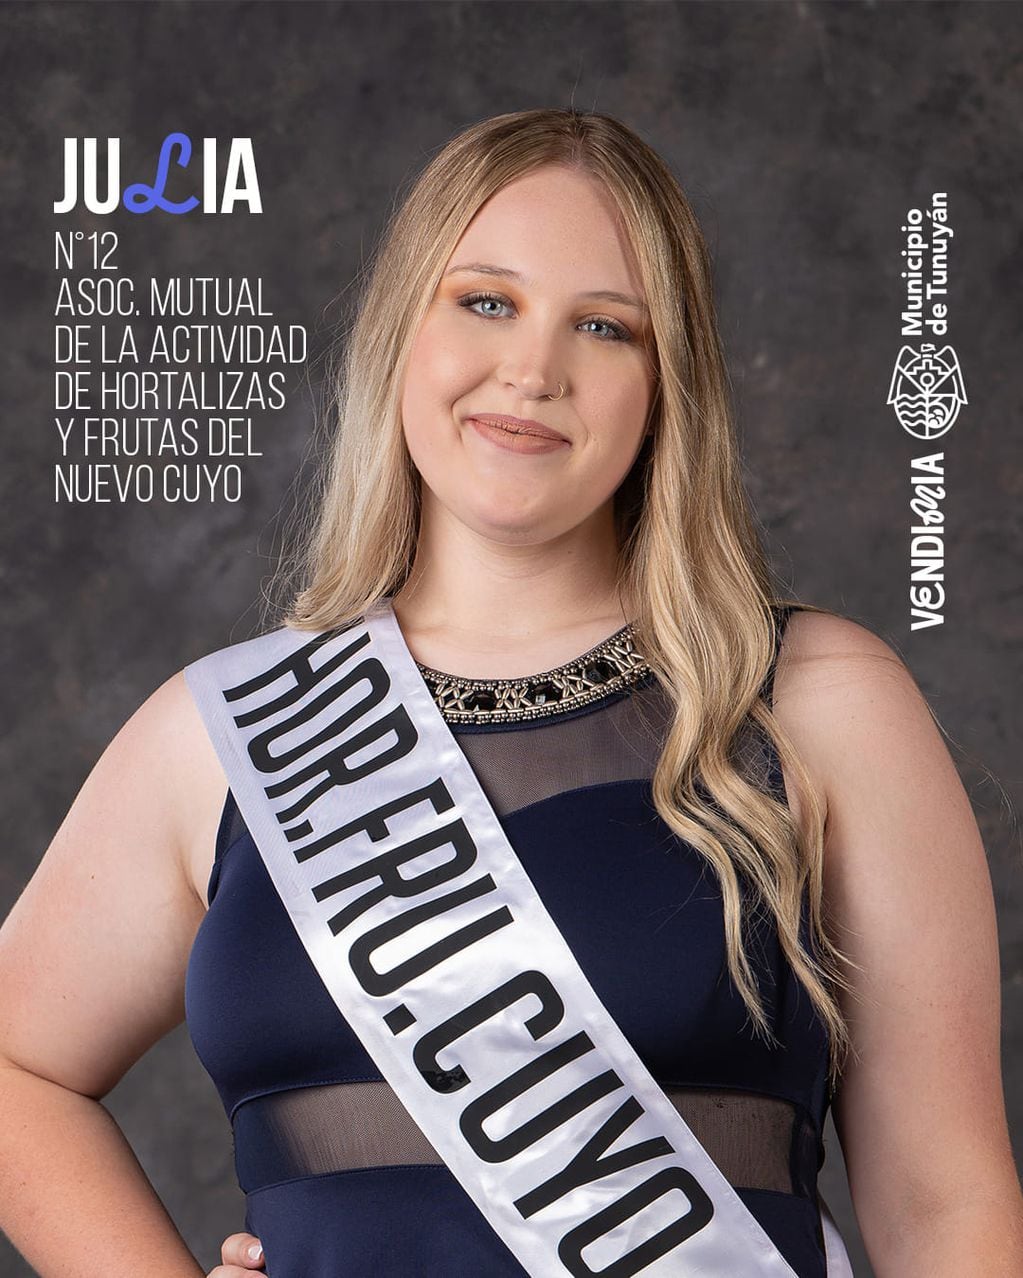 Julia pertenece a la Asociación Mutual de la actividad de hortalizas y grutas del Nuevo Cuyo